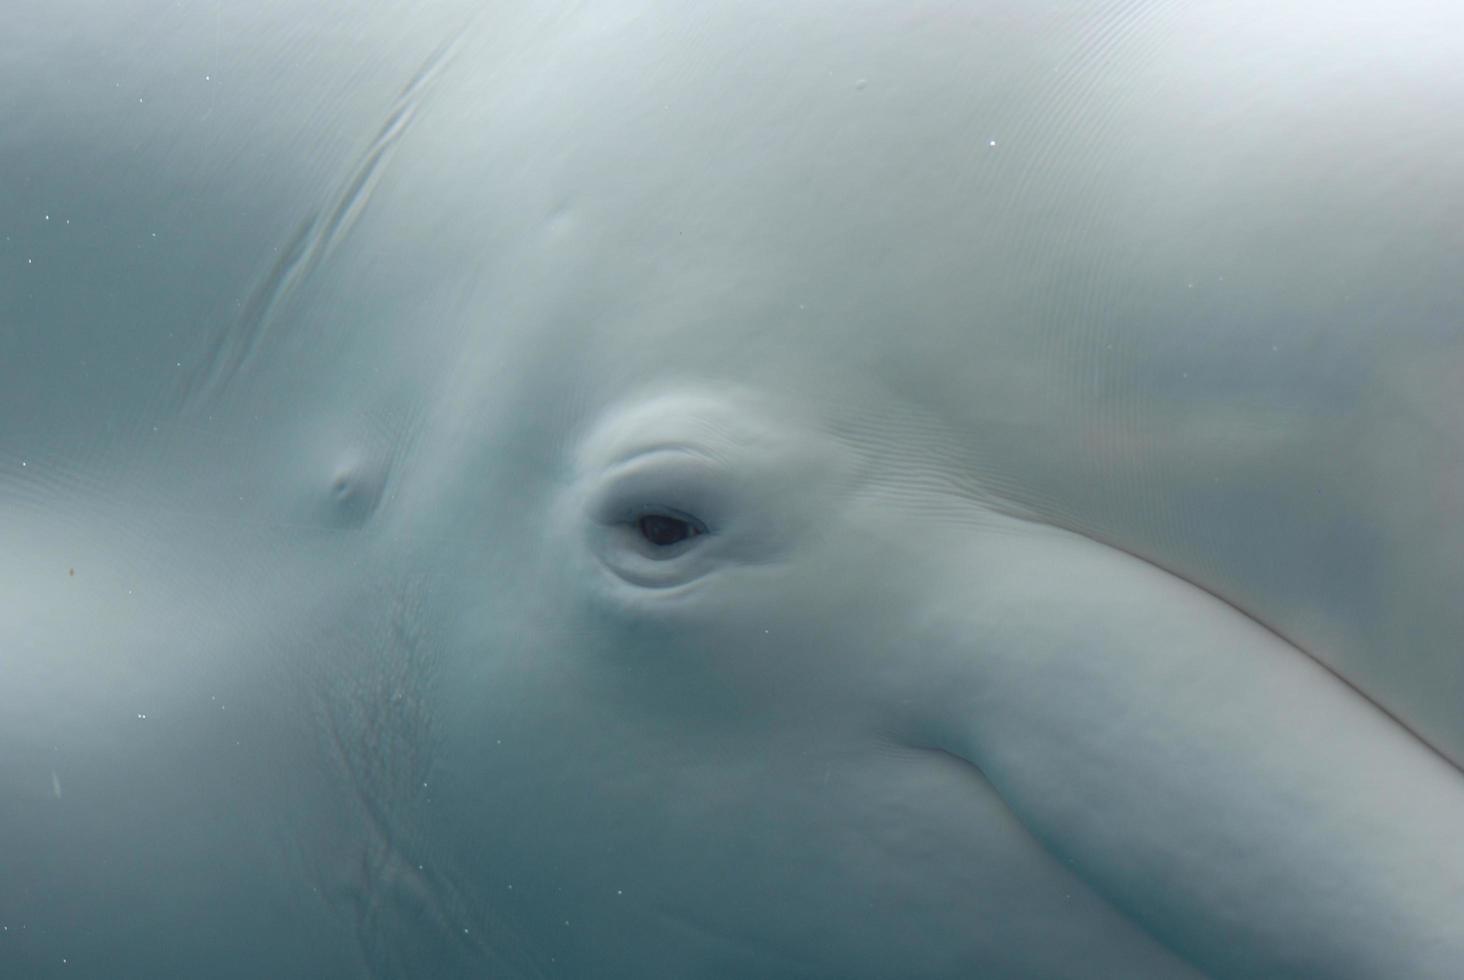 oog van een beloega walvis onder water foto